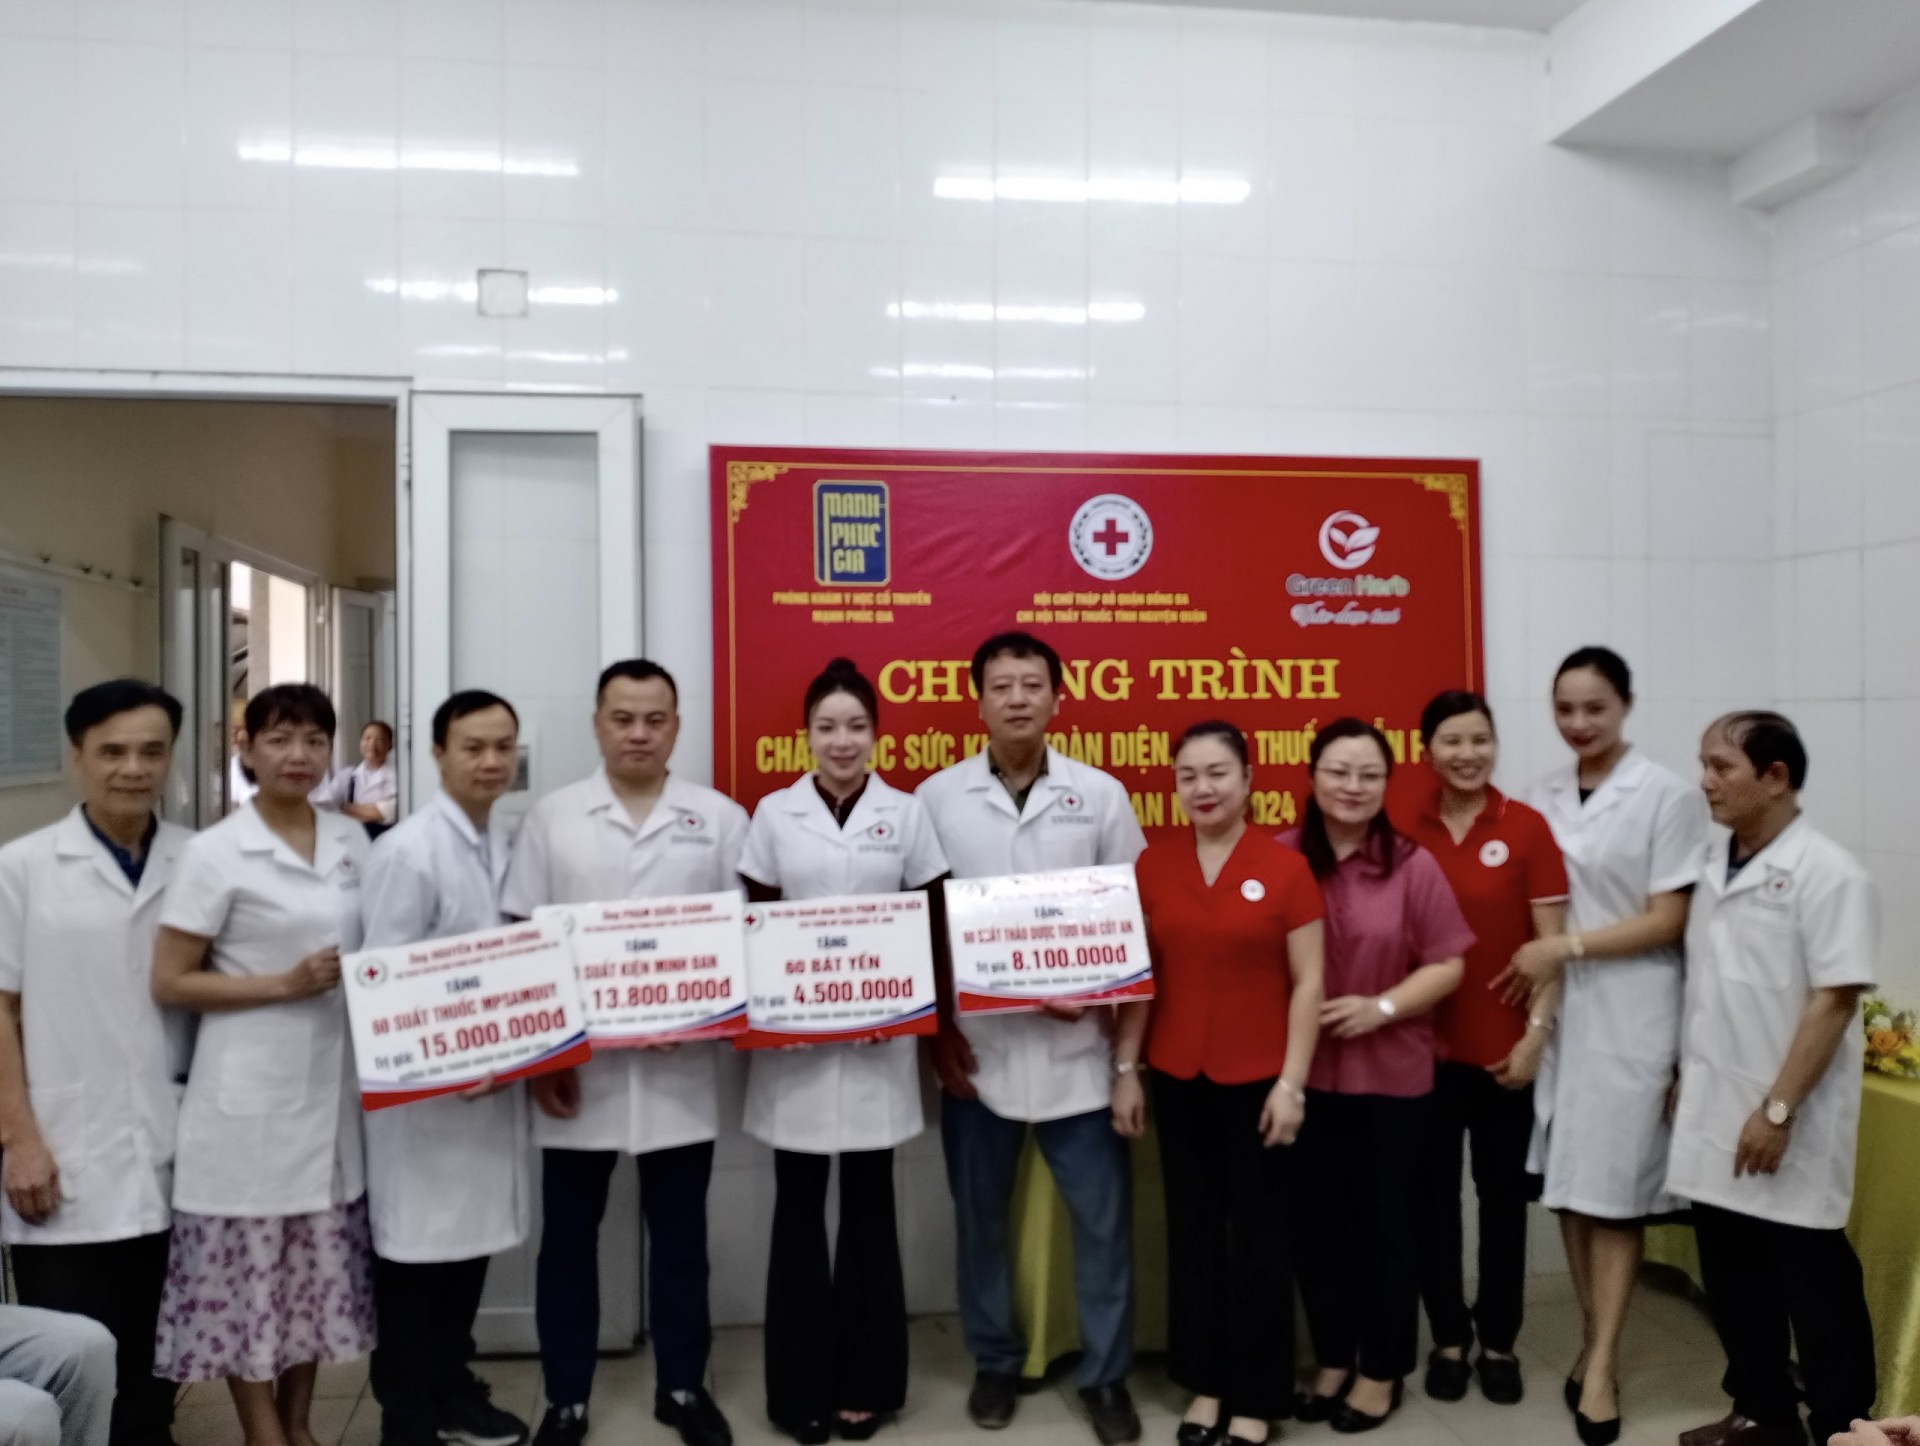 Đống Đa, Hà Nội: Câu Lạc bộ Thầy thuốc tình nguyện, Hội Chữ thập đỏ tổ chức Chăm sóc sức khỏe và cấp thuốc miễn phí cho người dân phường Thổ Quan